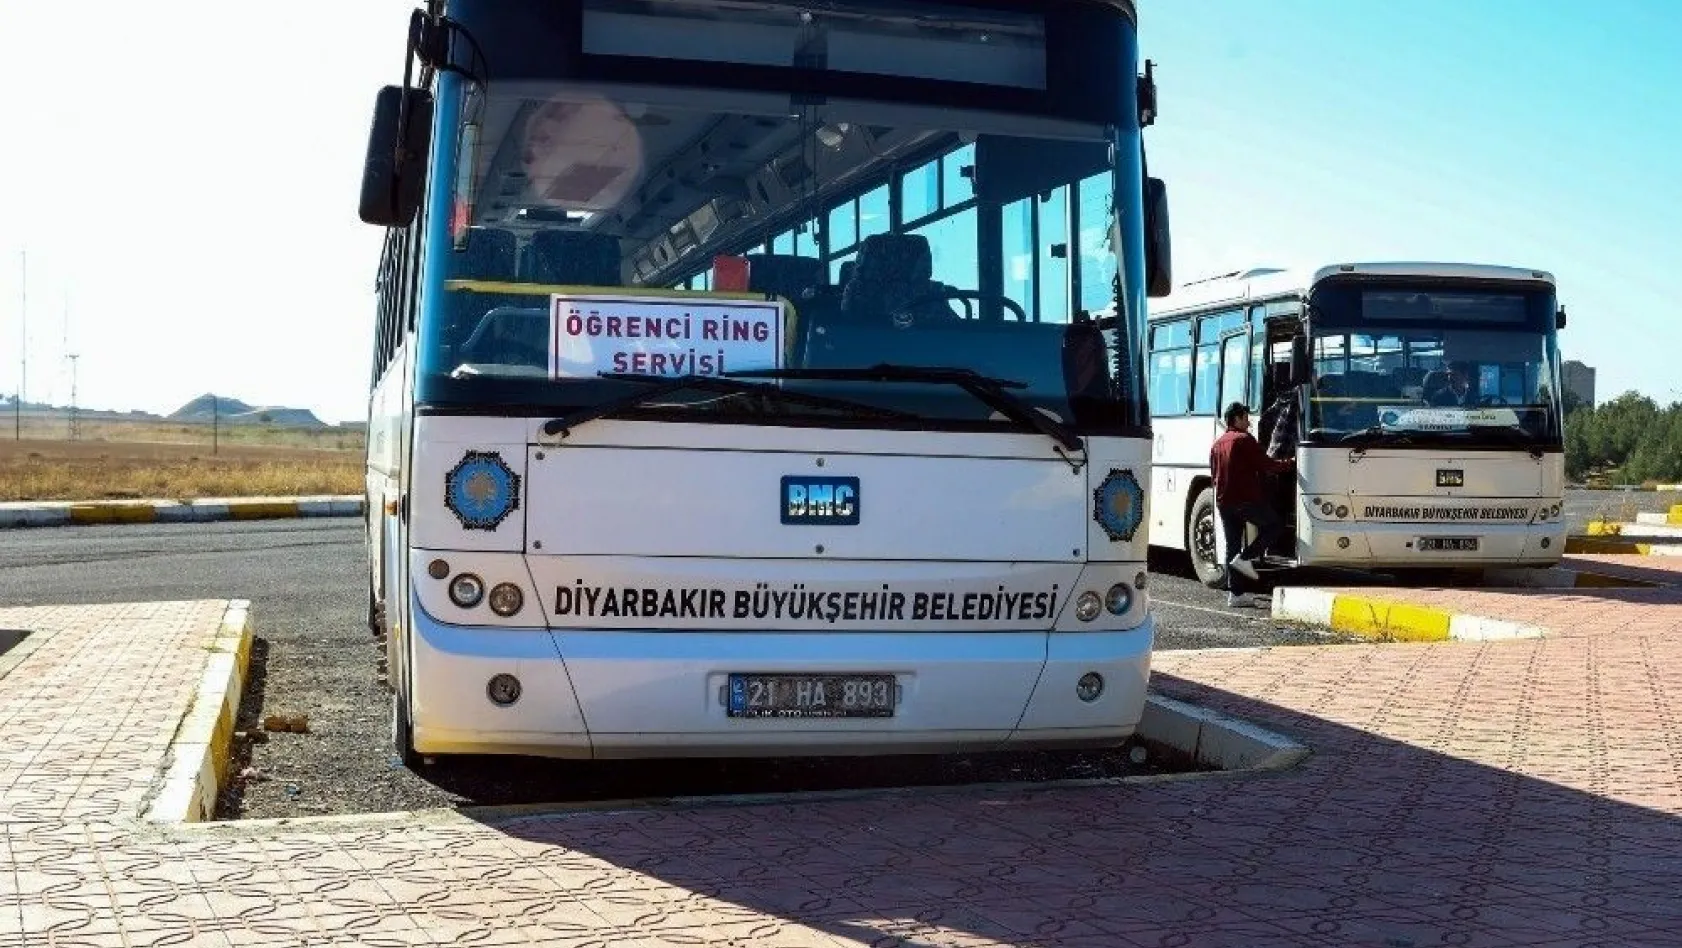 Diyarbakır'da öğrencilere ücretsiz ring servisi devam ediyor
